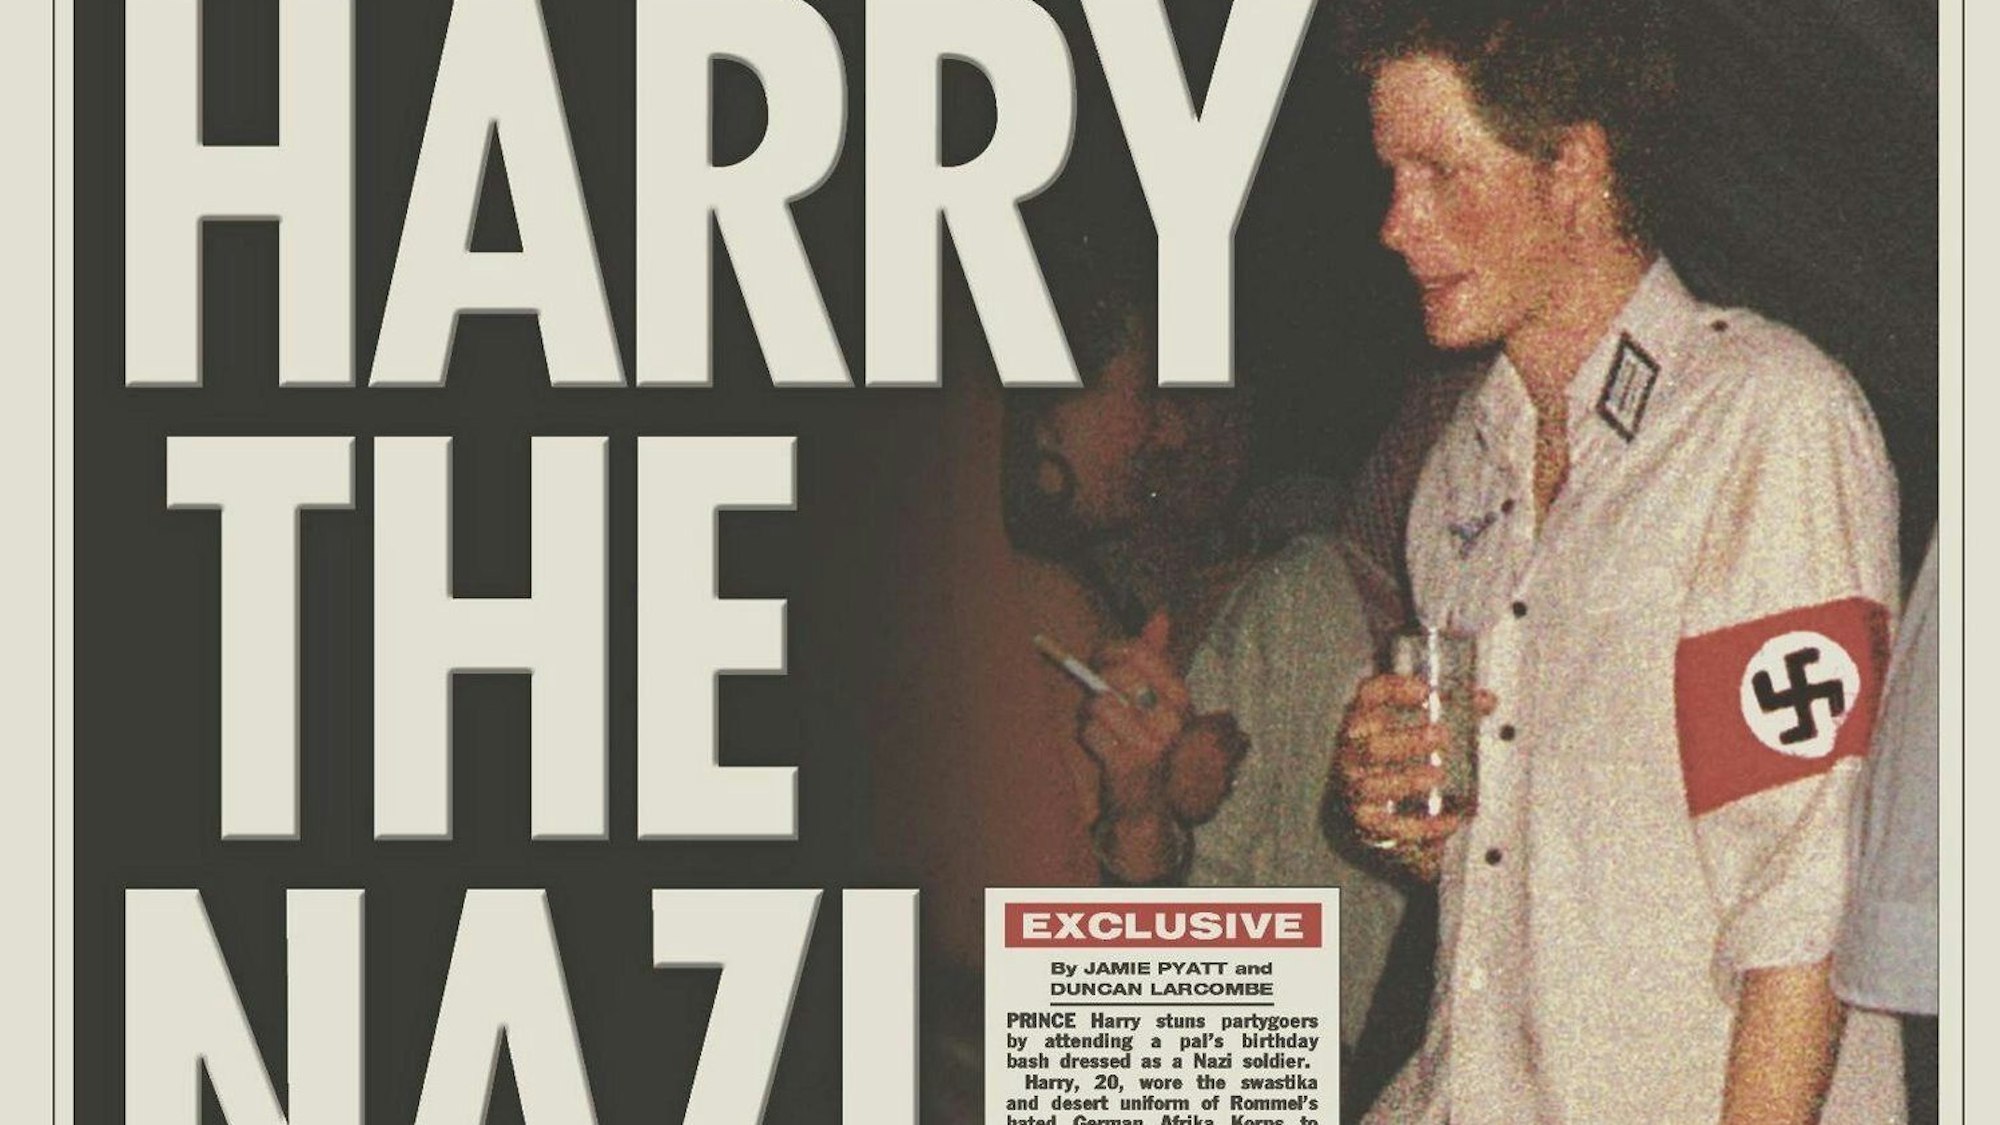 Zeitungsausschnitt von 2005:Prinz Harry steht mit Drink und Zigarette im weißen Hemd mit Hakenkreuzbinde auf einer Party.